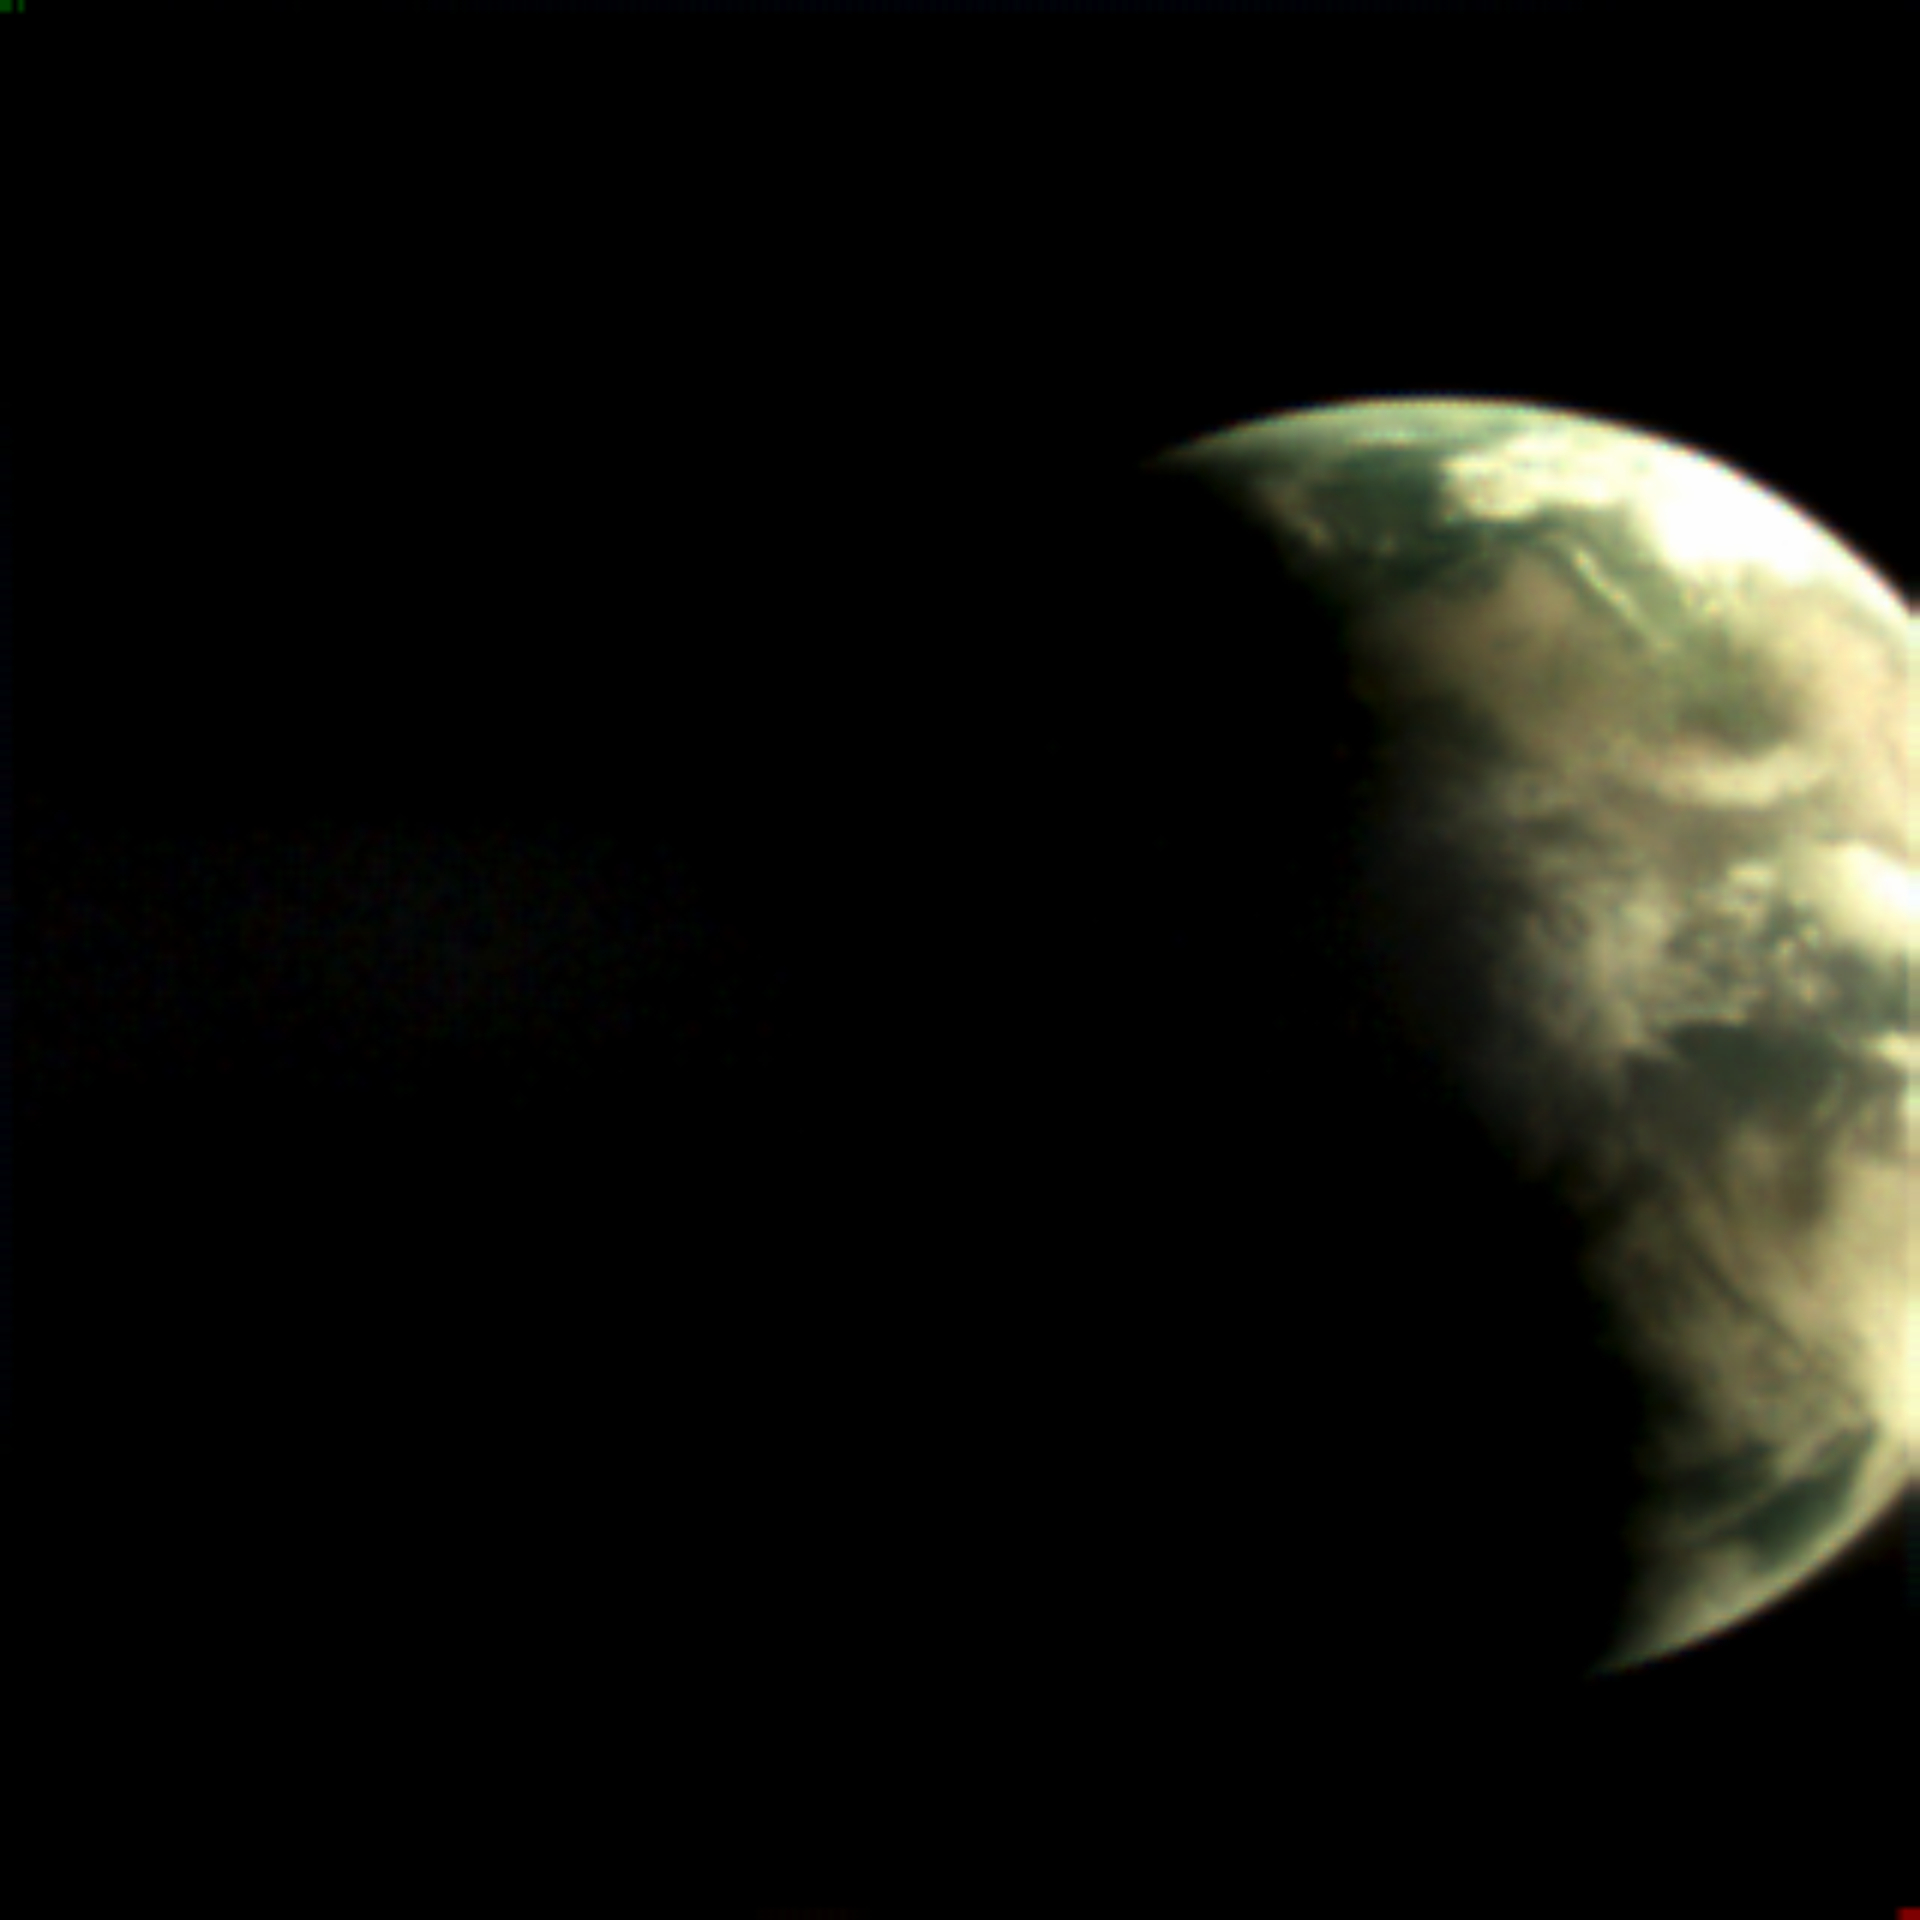 una imagen borrosa de un planeta semisombreado.